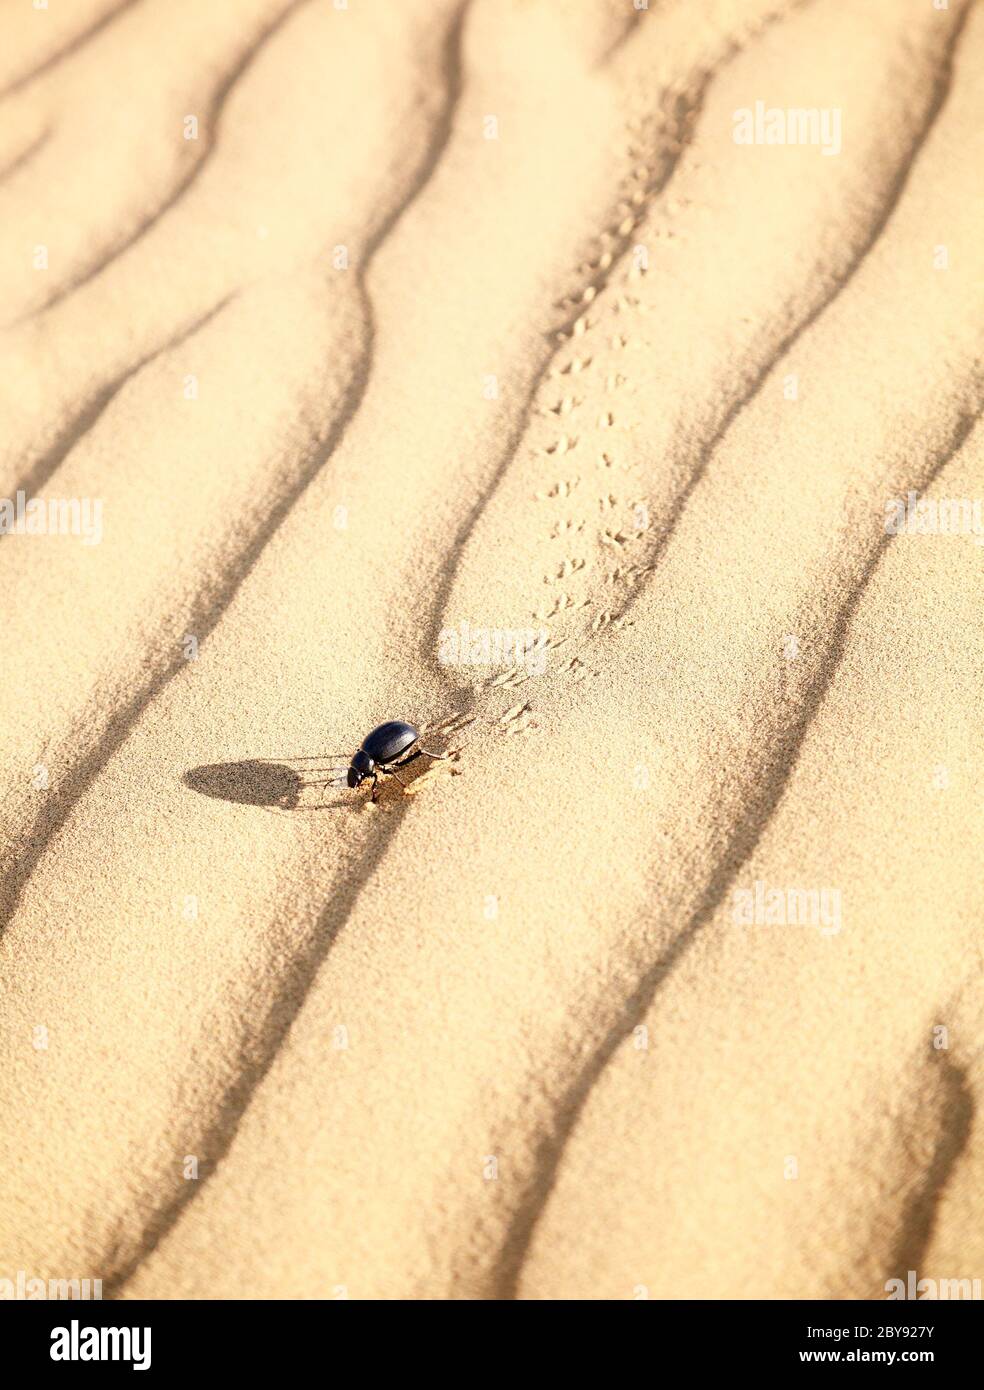 Scarabaeus on sand Stock Photo